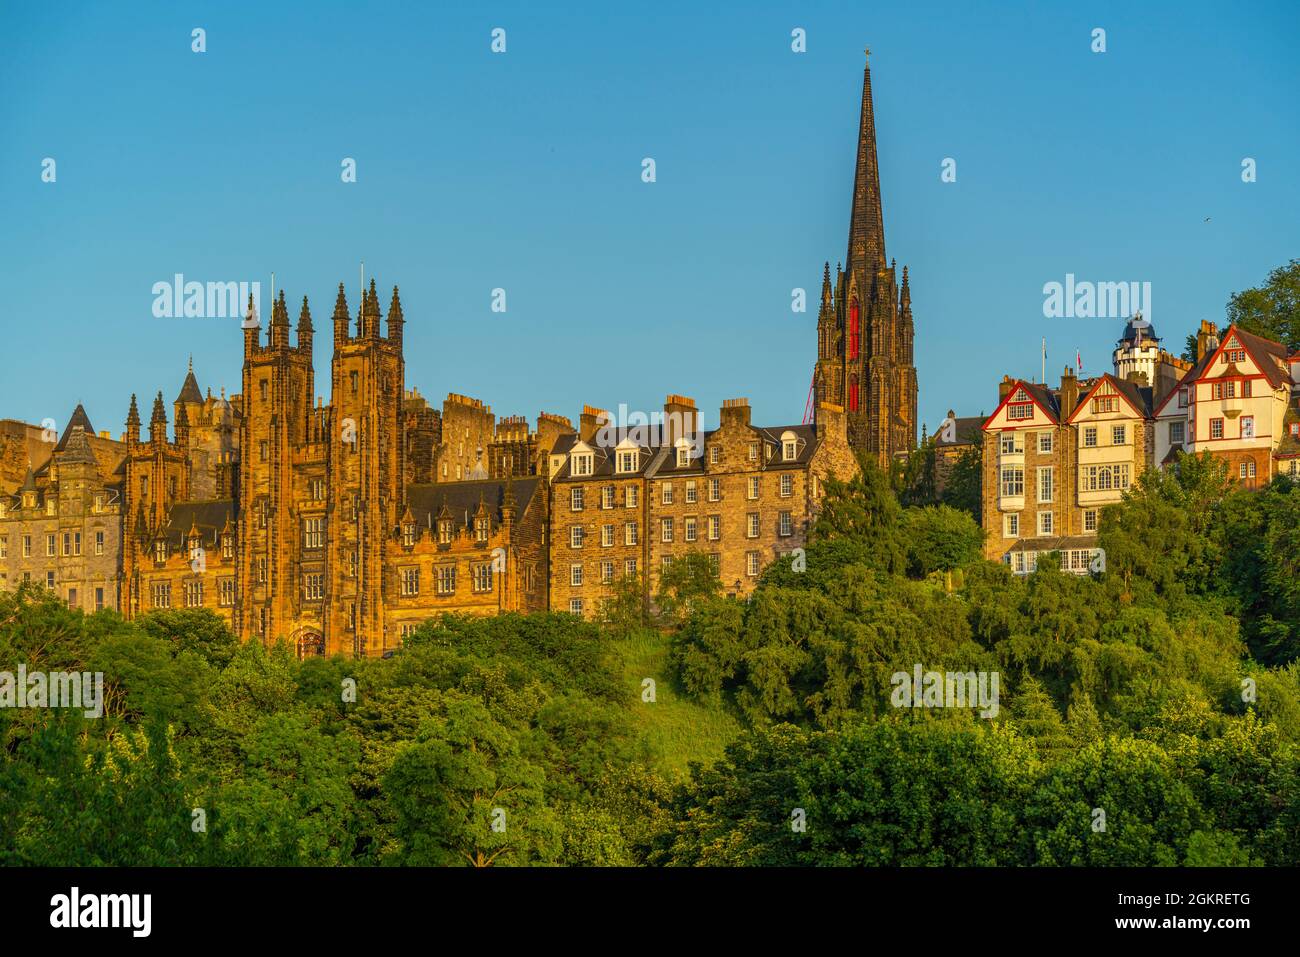 Blick auf das New College, die University of Edinburgh, auf dem Hügel, von der Princes Street bei Sonnenuntergang, Edinburgh, Schottland, Großbritannien, Europa Stockfoto